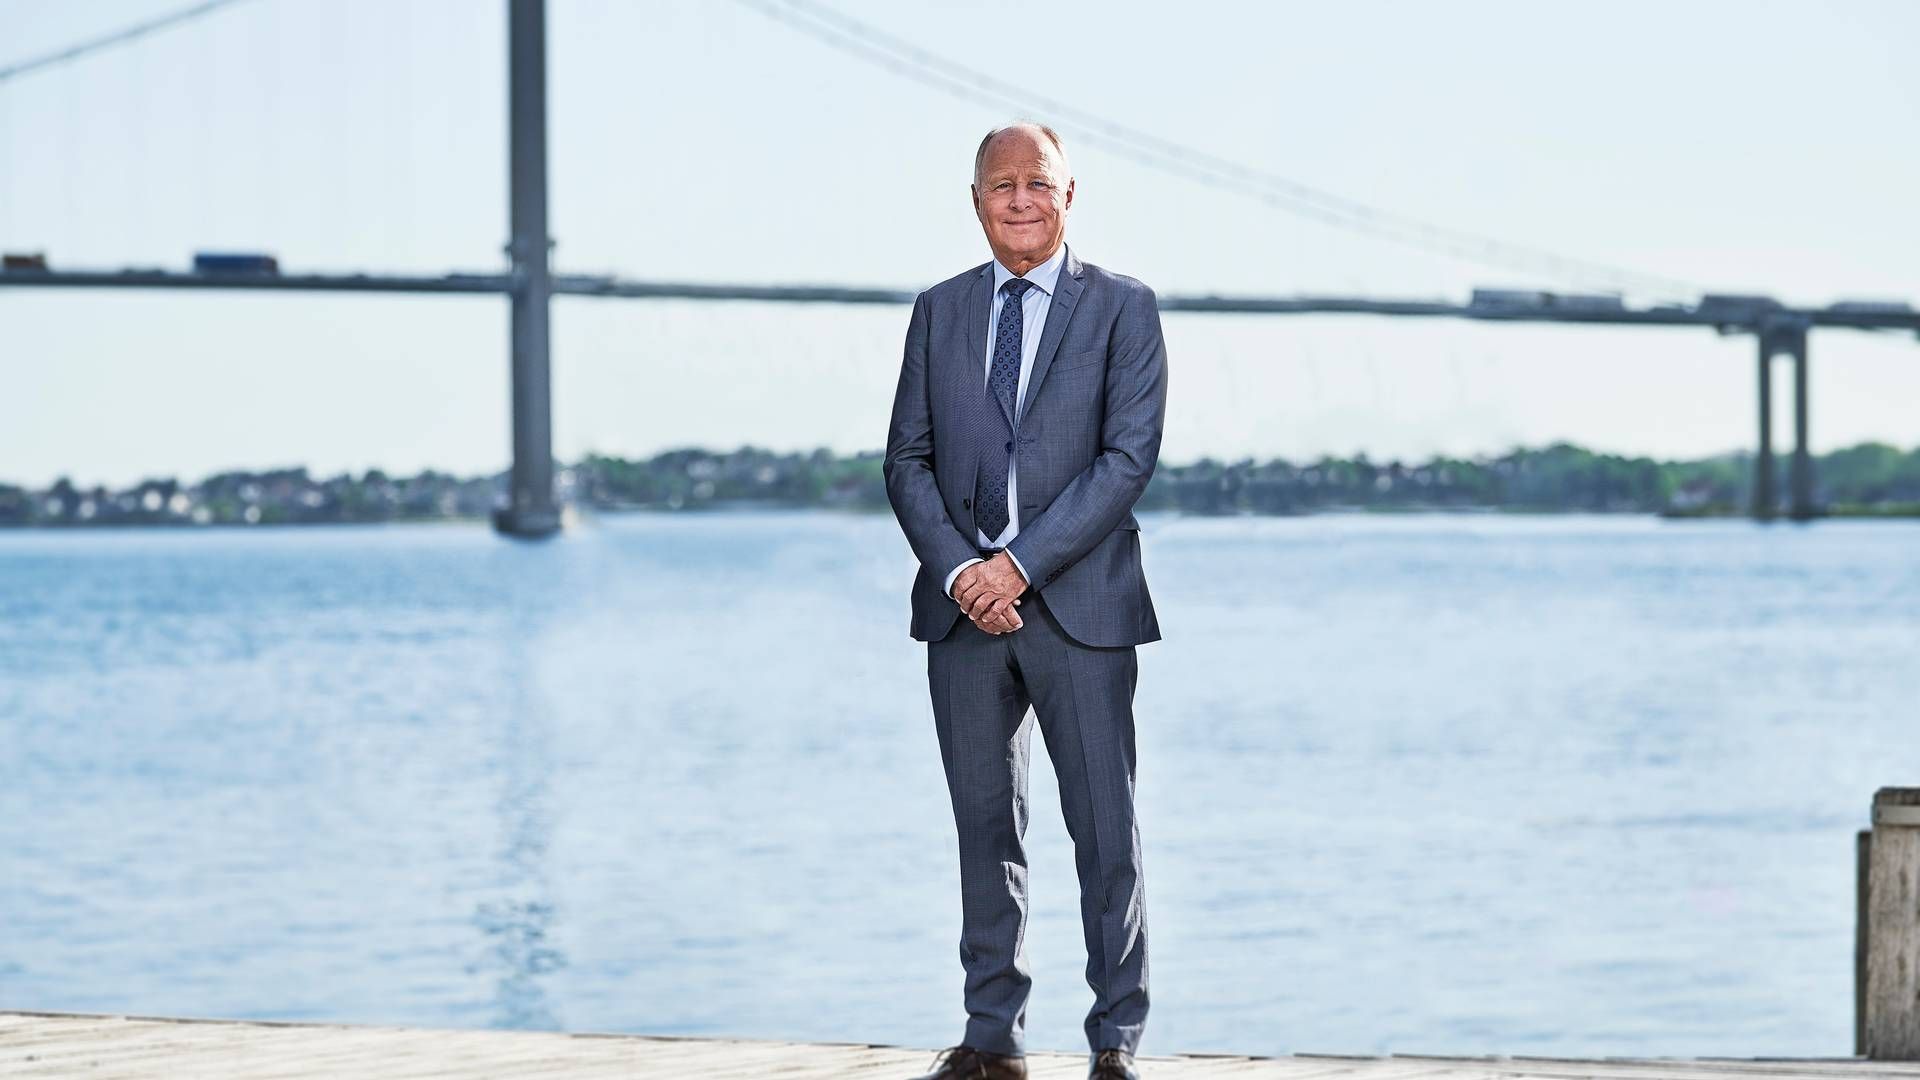 Torben Østergaard-Nielsen har tjent en formue på handel med olie. Han var i 2021 Danmarks sjetterigeste person ifølge Økonomisk Ugebrev med en formue på over 22 mia. kr. | Foto: Pr / Ustc